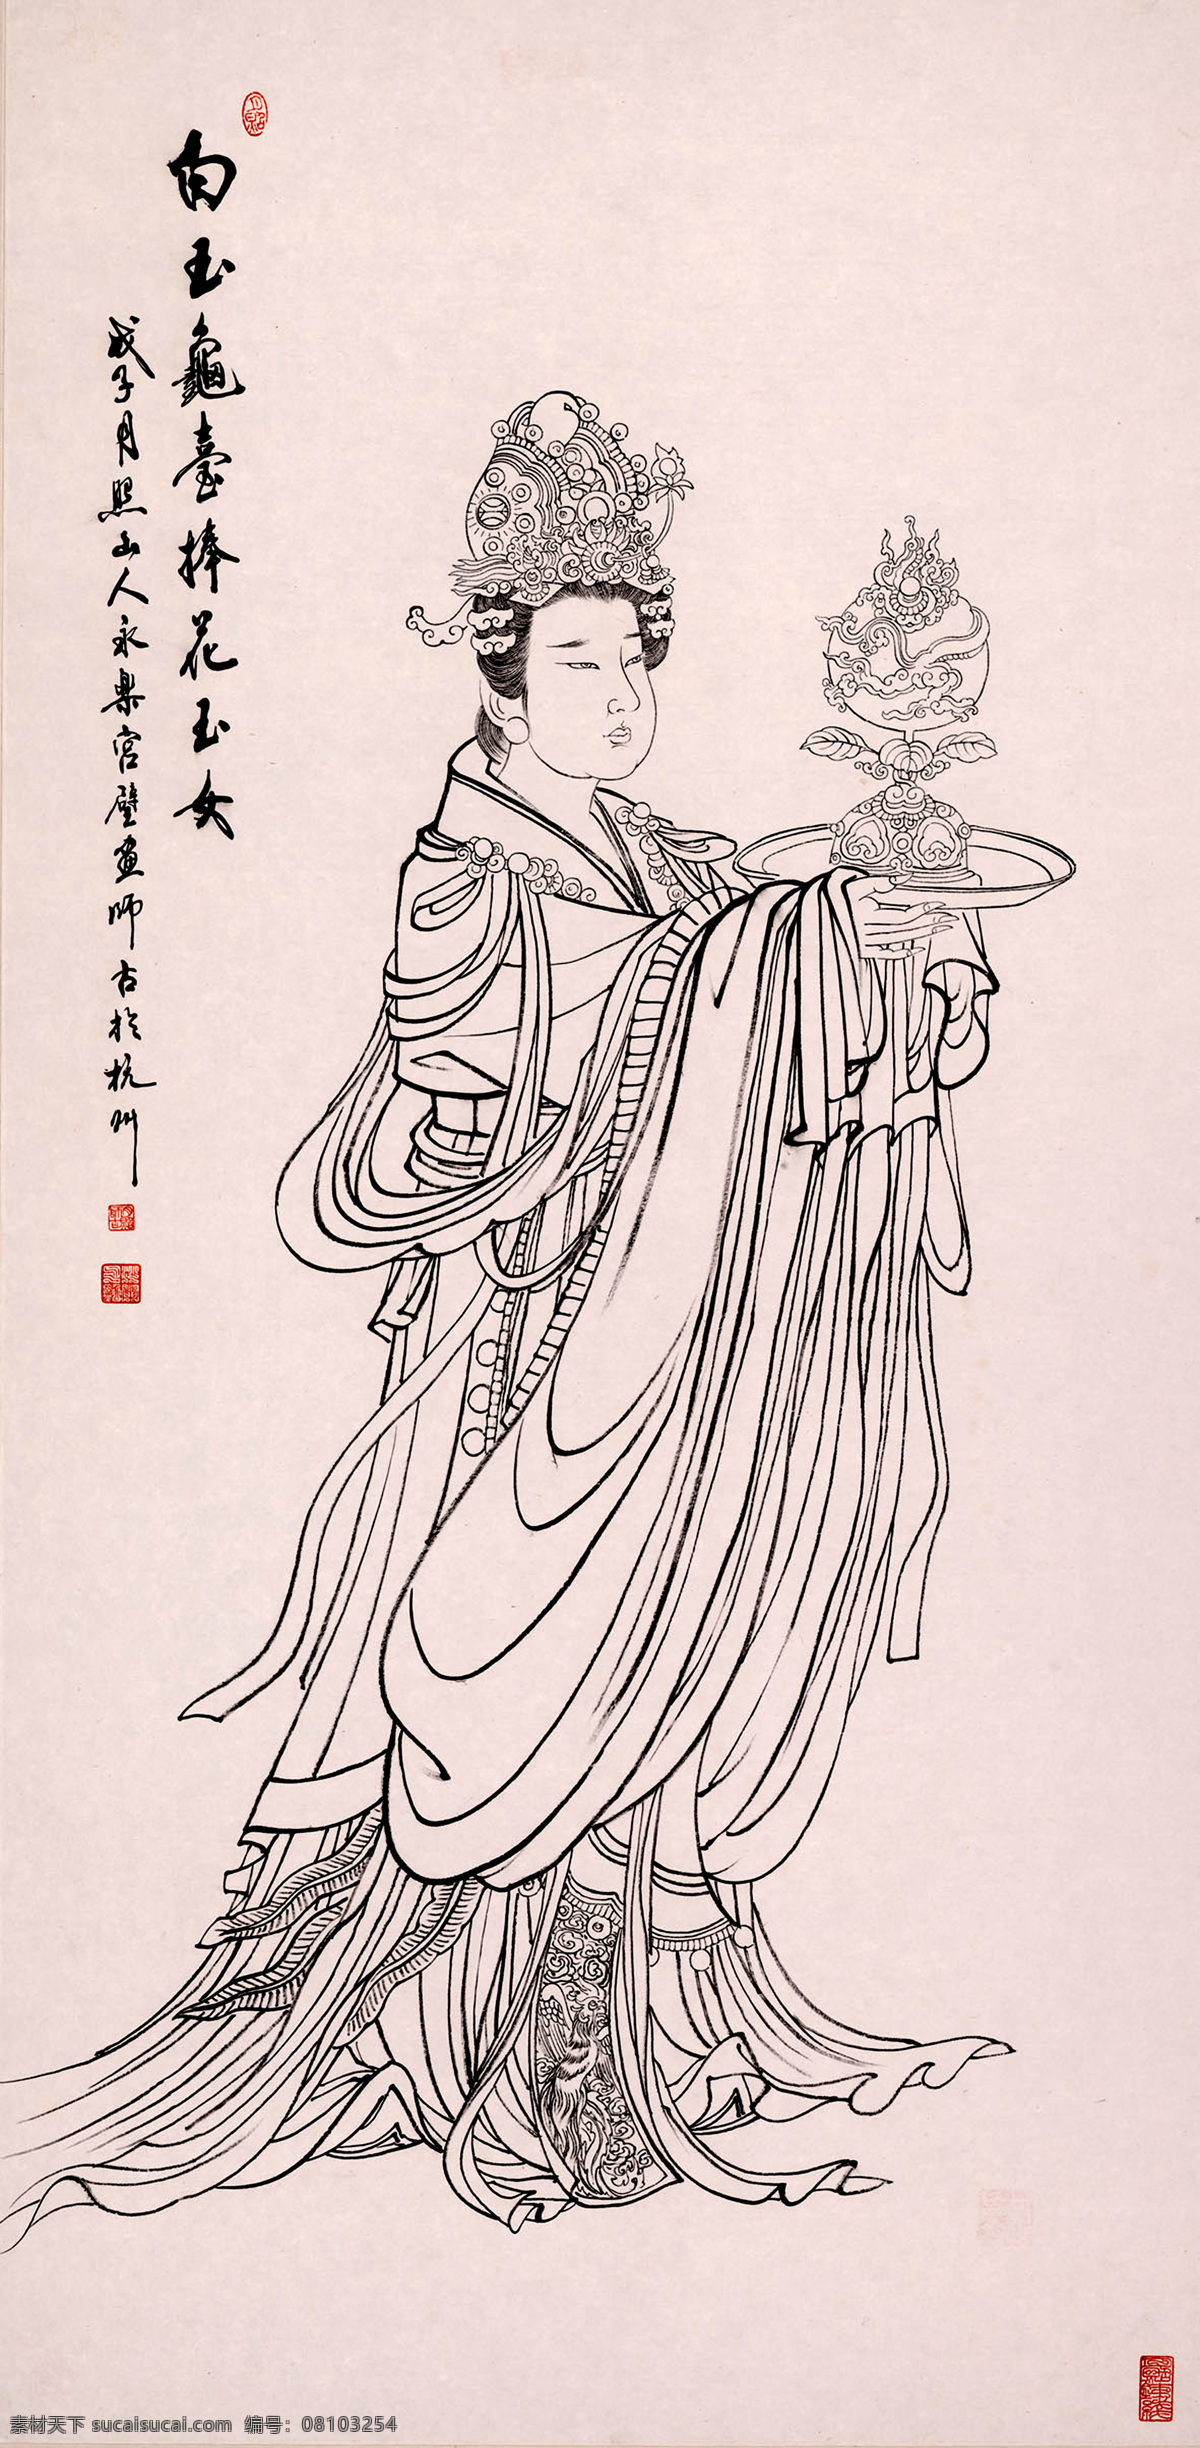 古代美女 古装 仙女 风冠 长裙 托盘 香炉 中国风 传统艺术 白描 线描 国画 工笔画 绘画书法 文化艺术